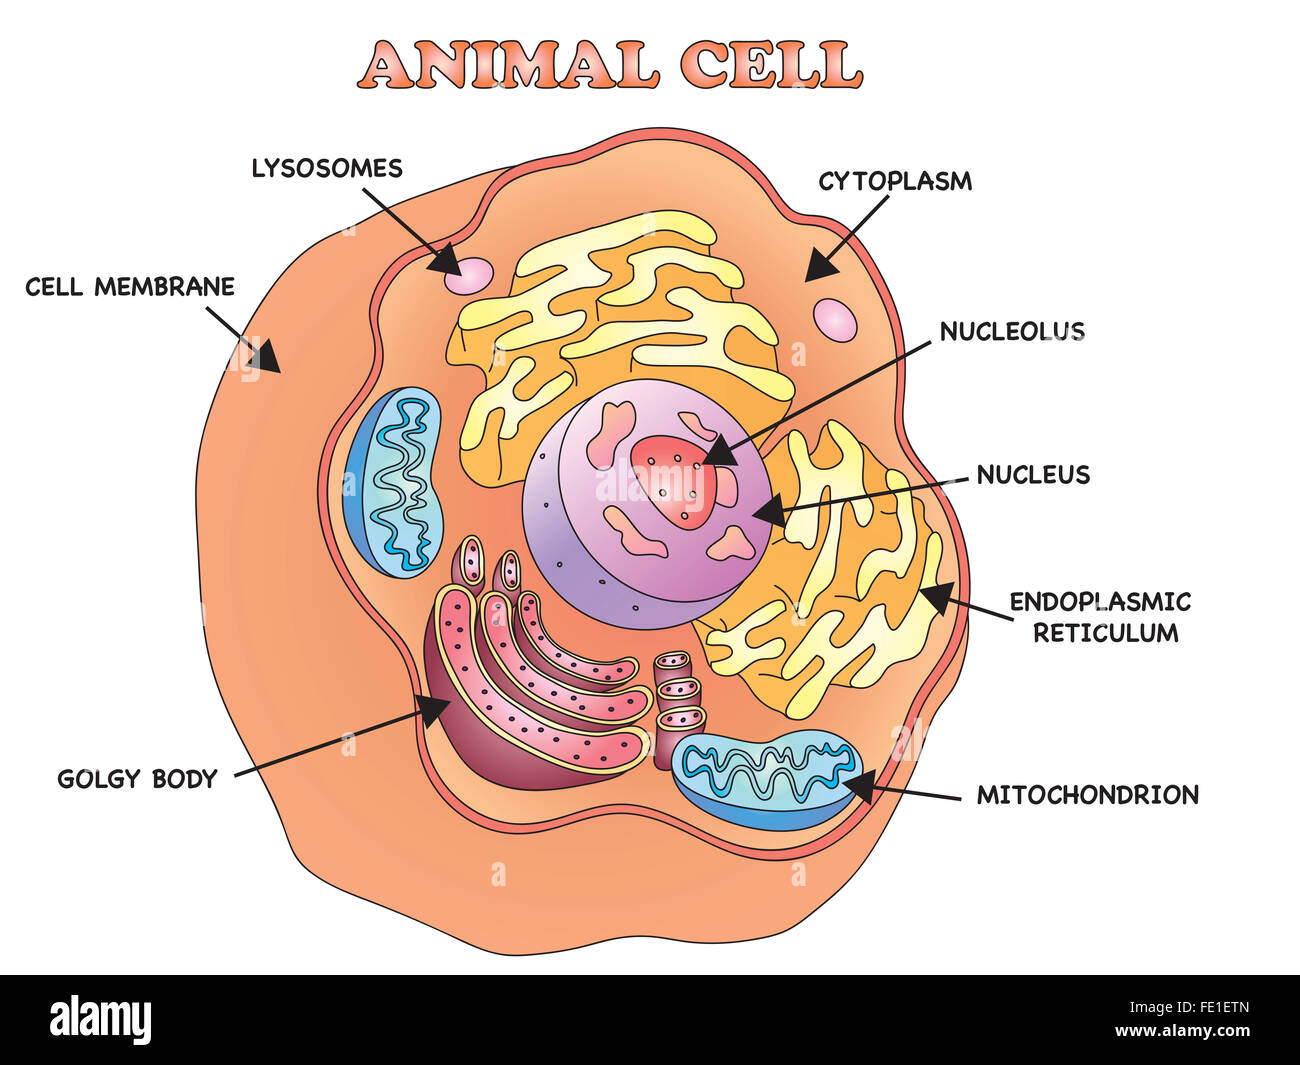 Cellula animale immagini e fotografie stock ad alta risoluzione - Alamy